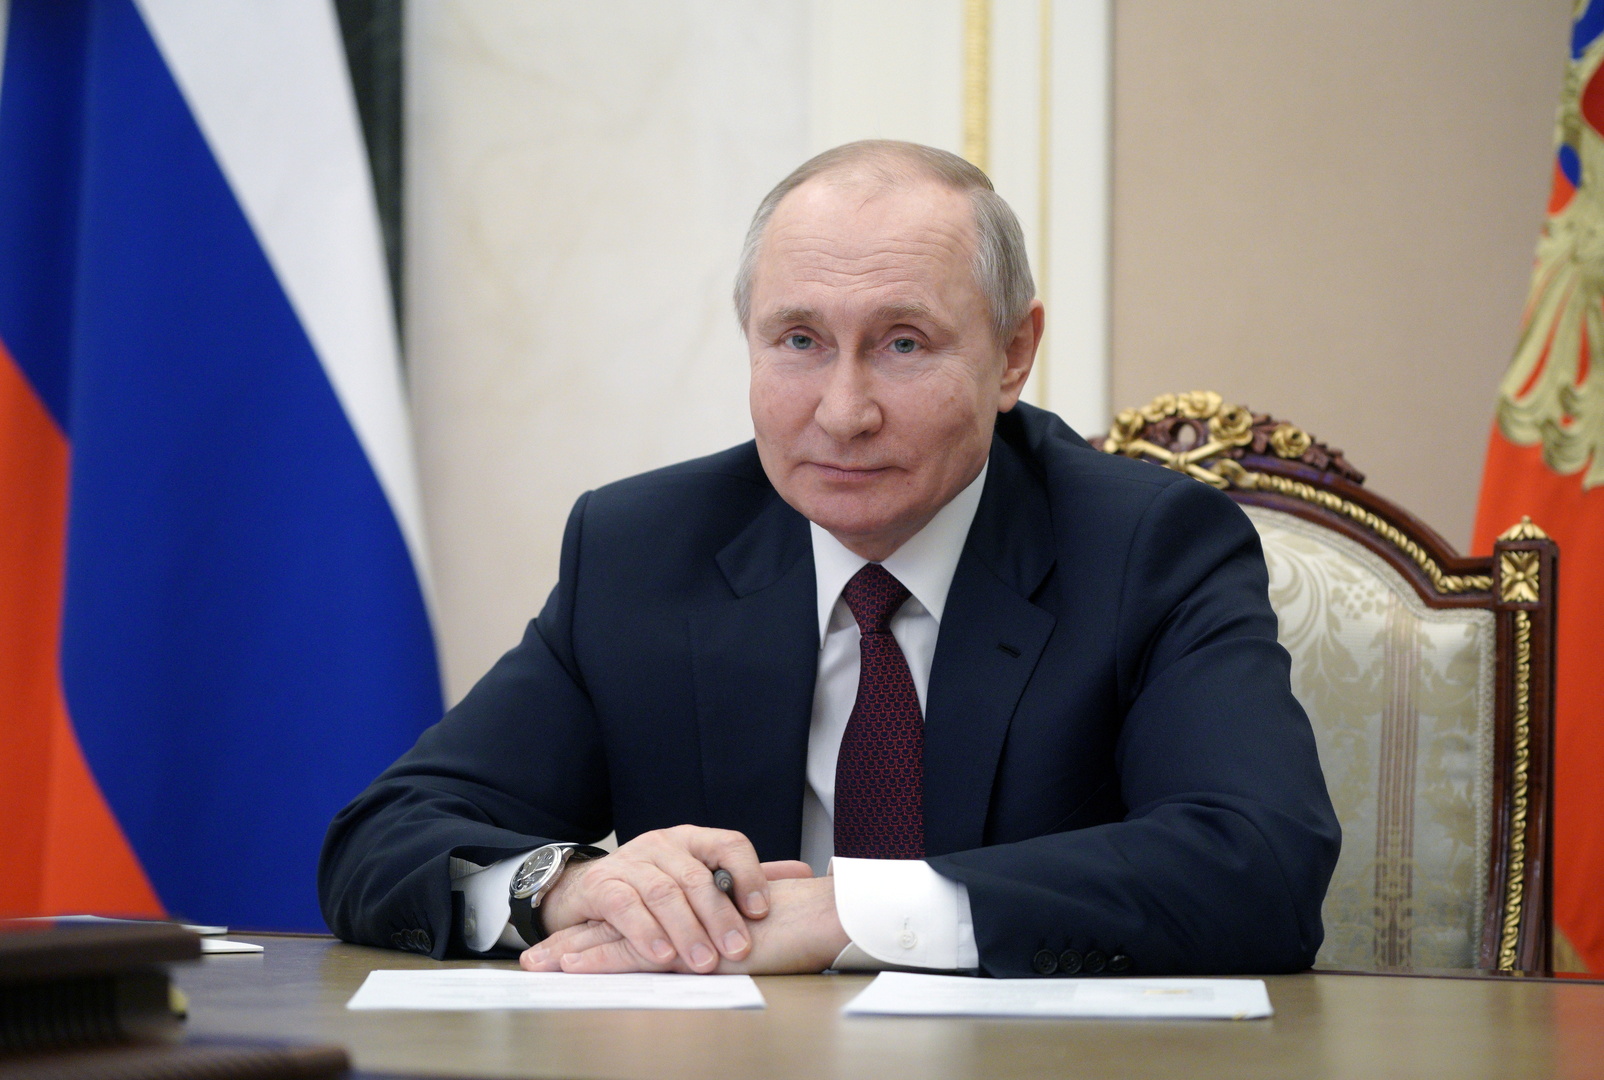 بوتين ردا على تصريحات بايدن: سيتعين على الولايات المتحدة أن تحسب حسابا لروسيا